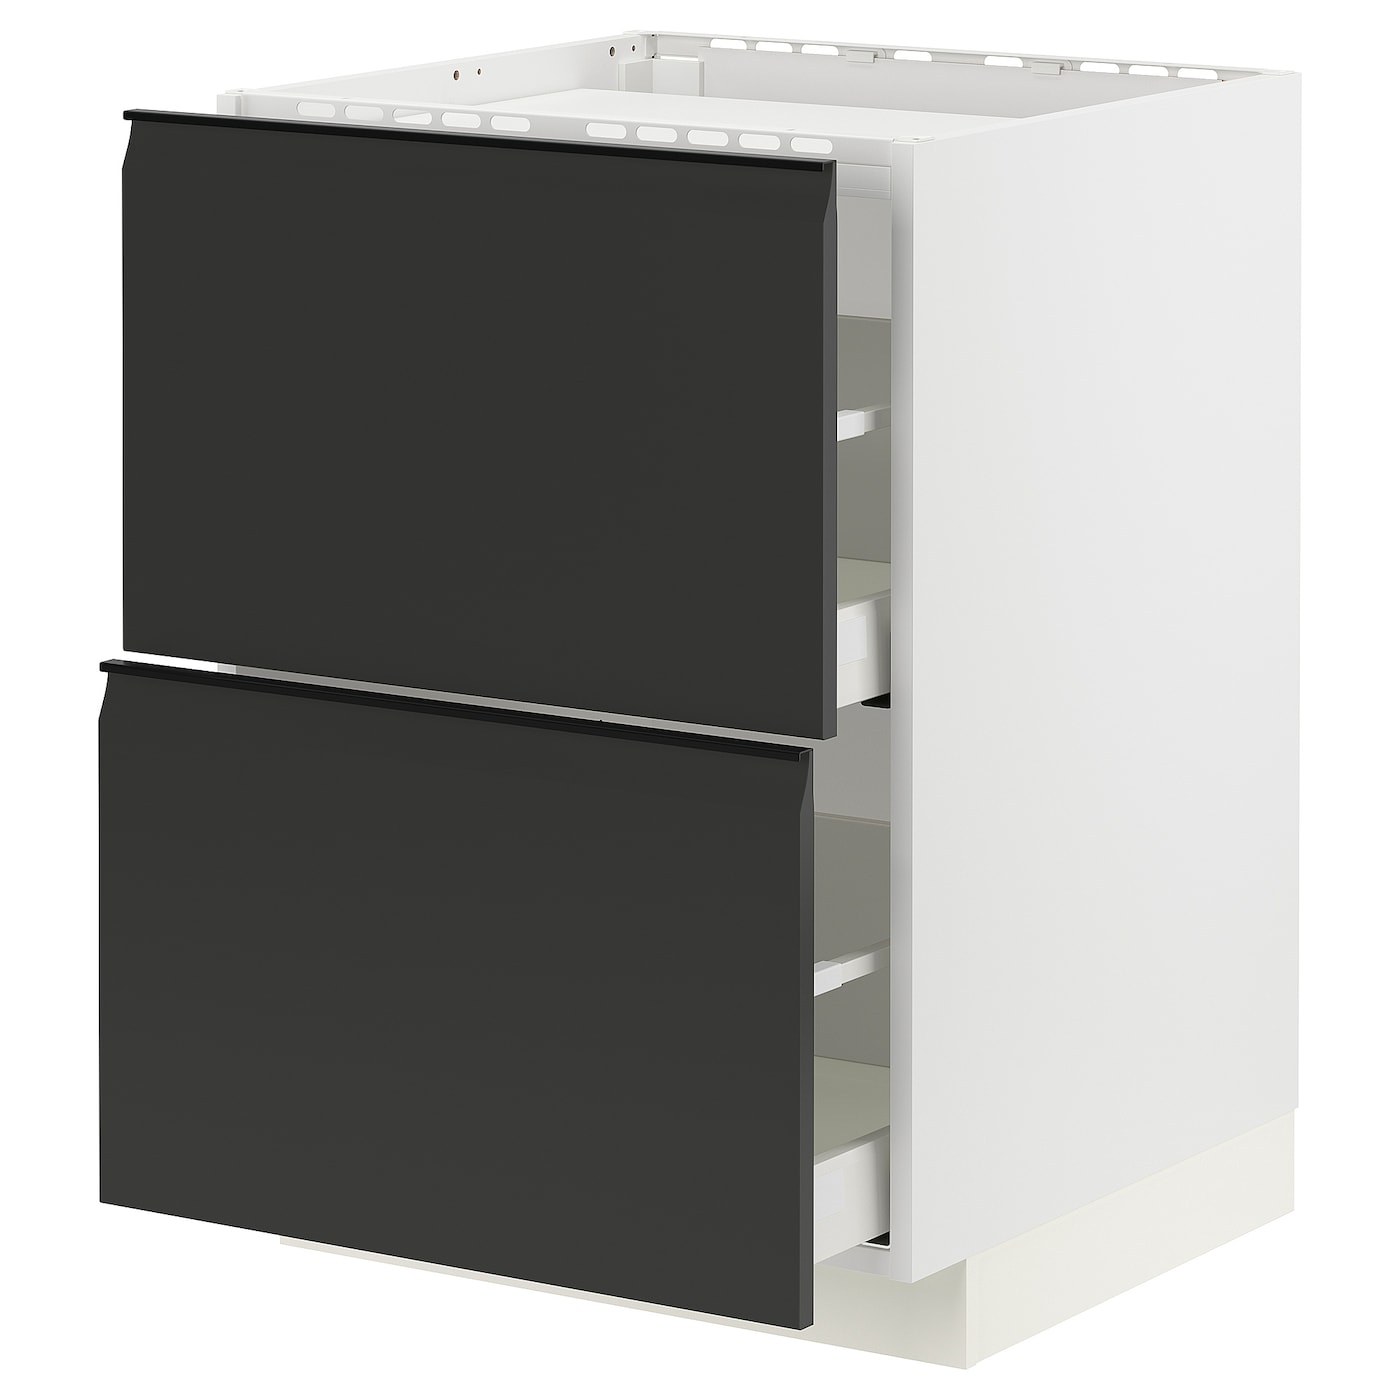 Напольный шкаф  - IKEA METOD MAXIMERA, 88x61,6x60см, белый/черный, МЕТОД МАКСИМЕРА ИКЕА